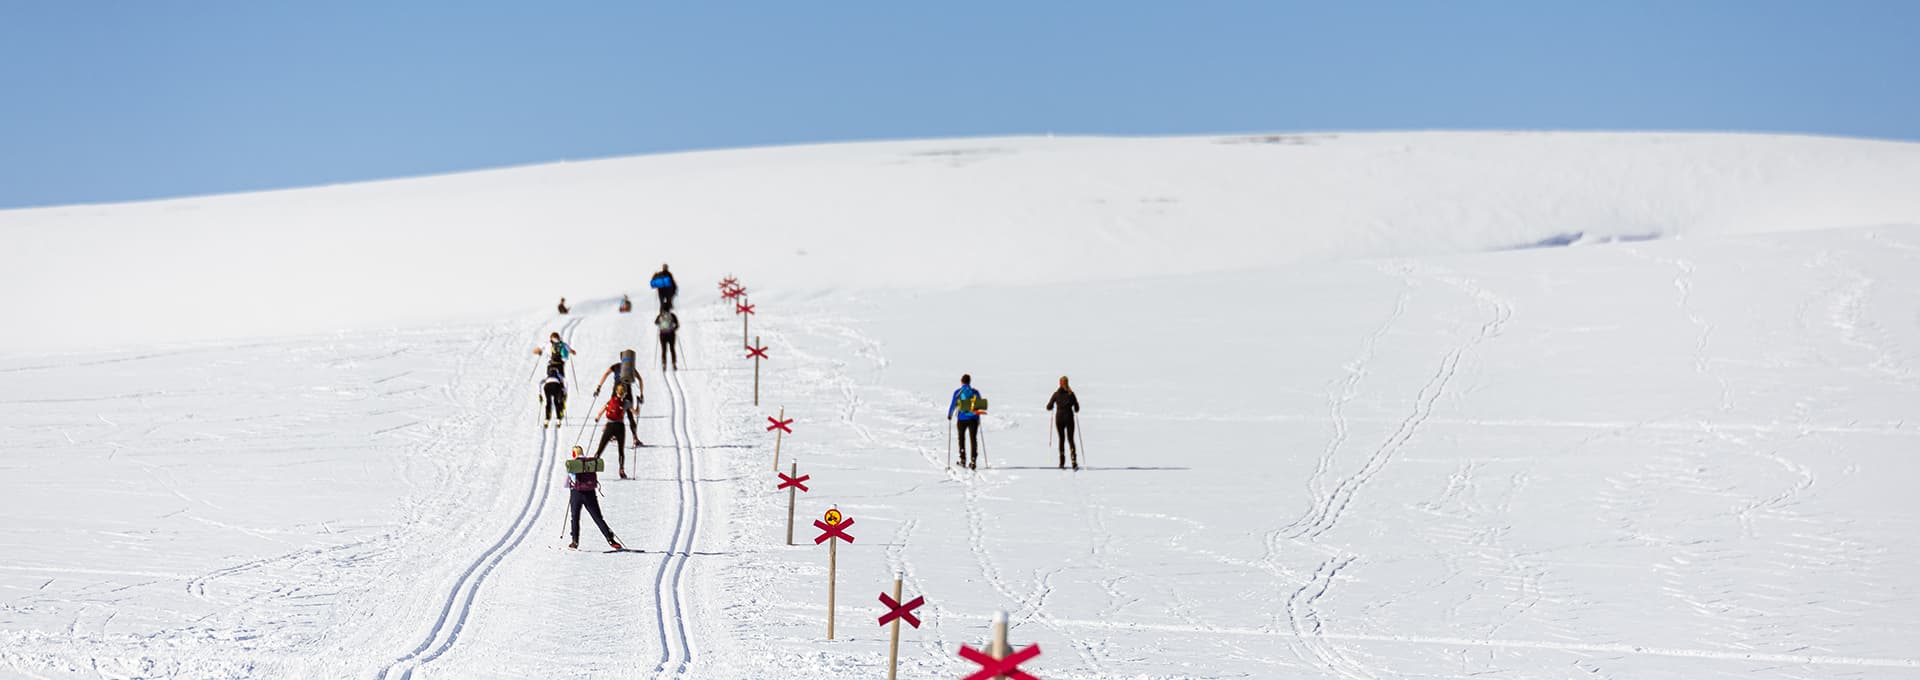 cross-country skiiers in Ramundberget